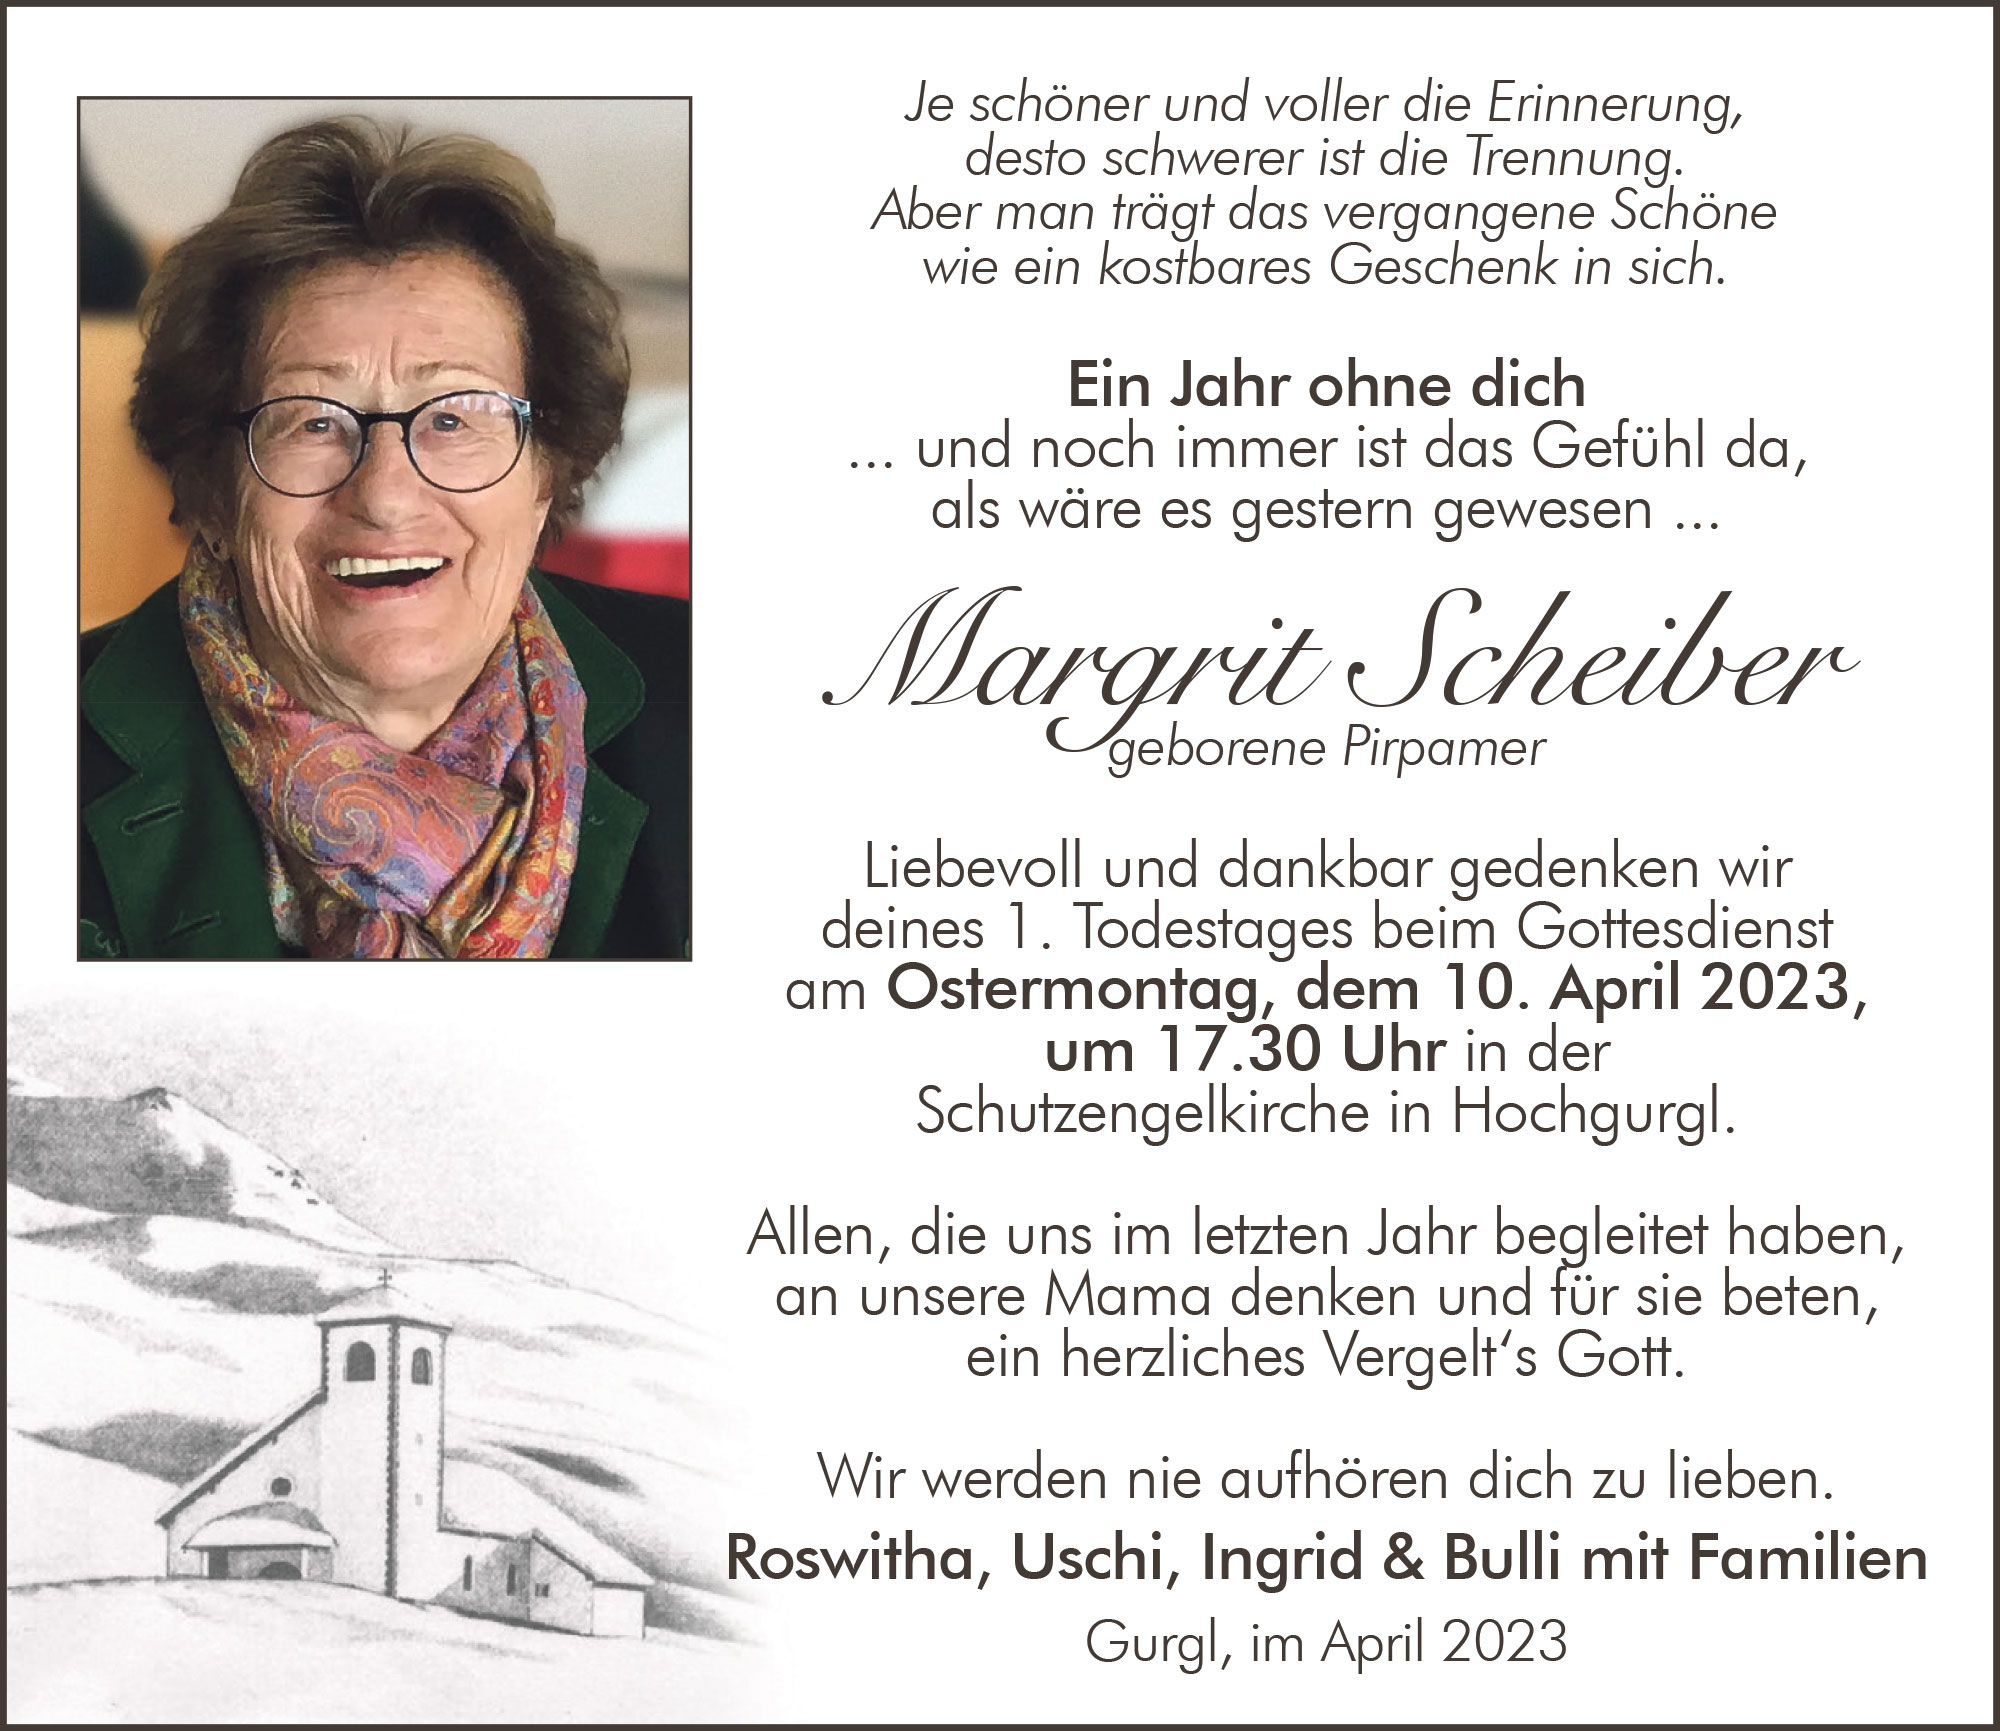 Margrit Scheiber